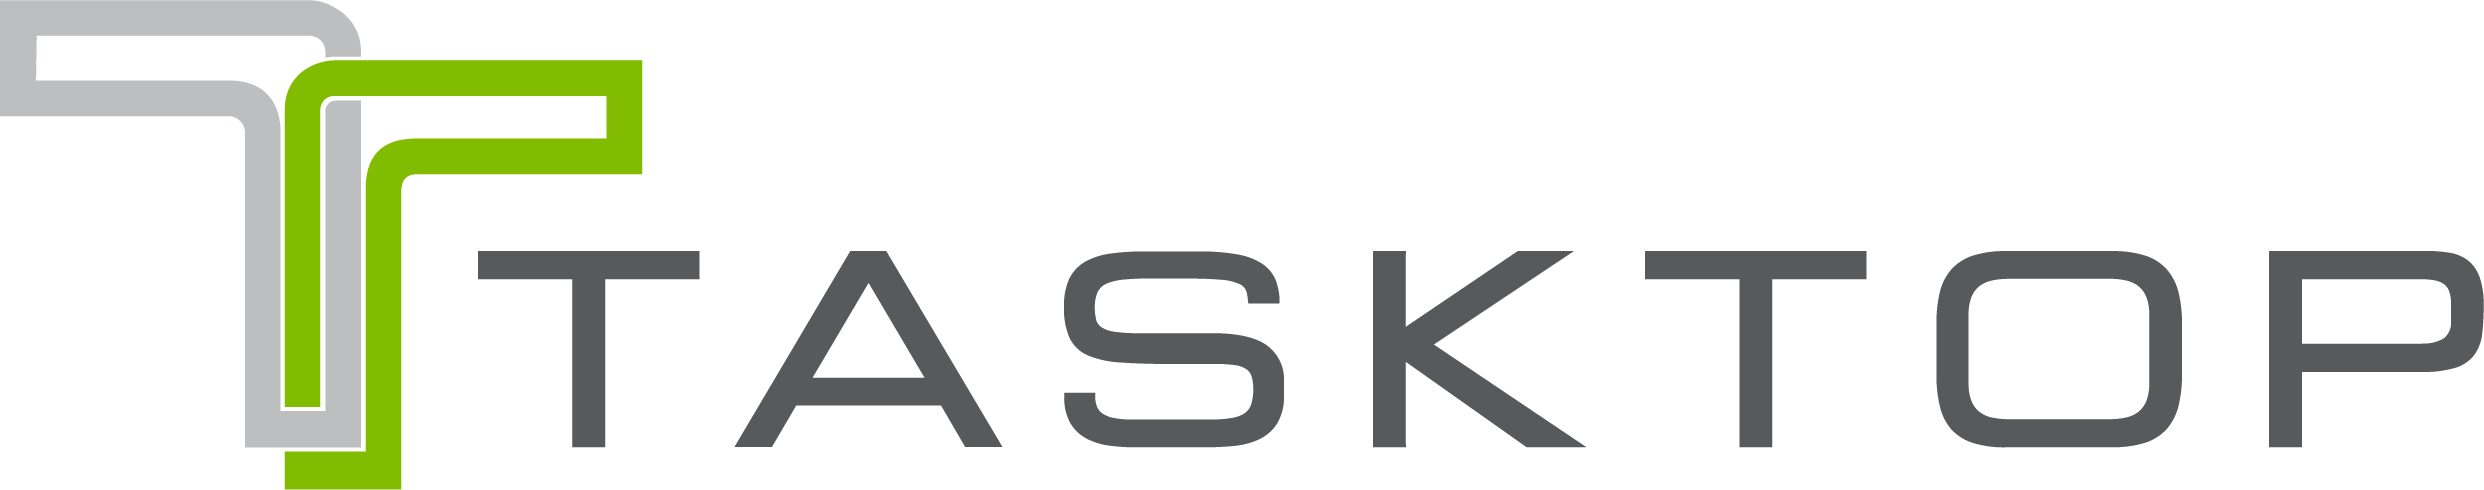 tasktop-logo.png